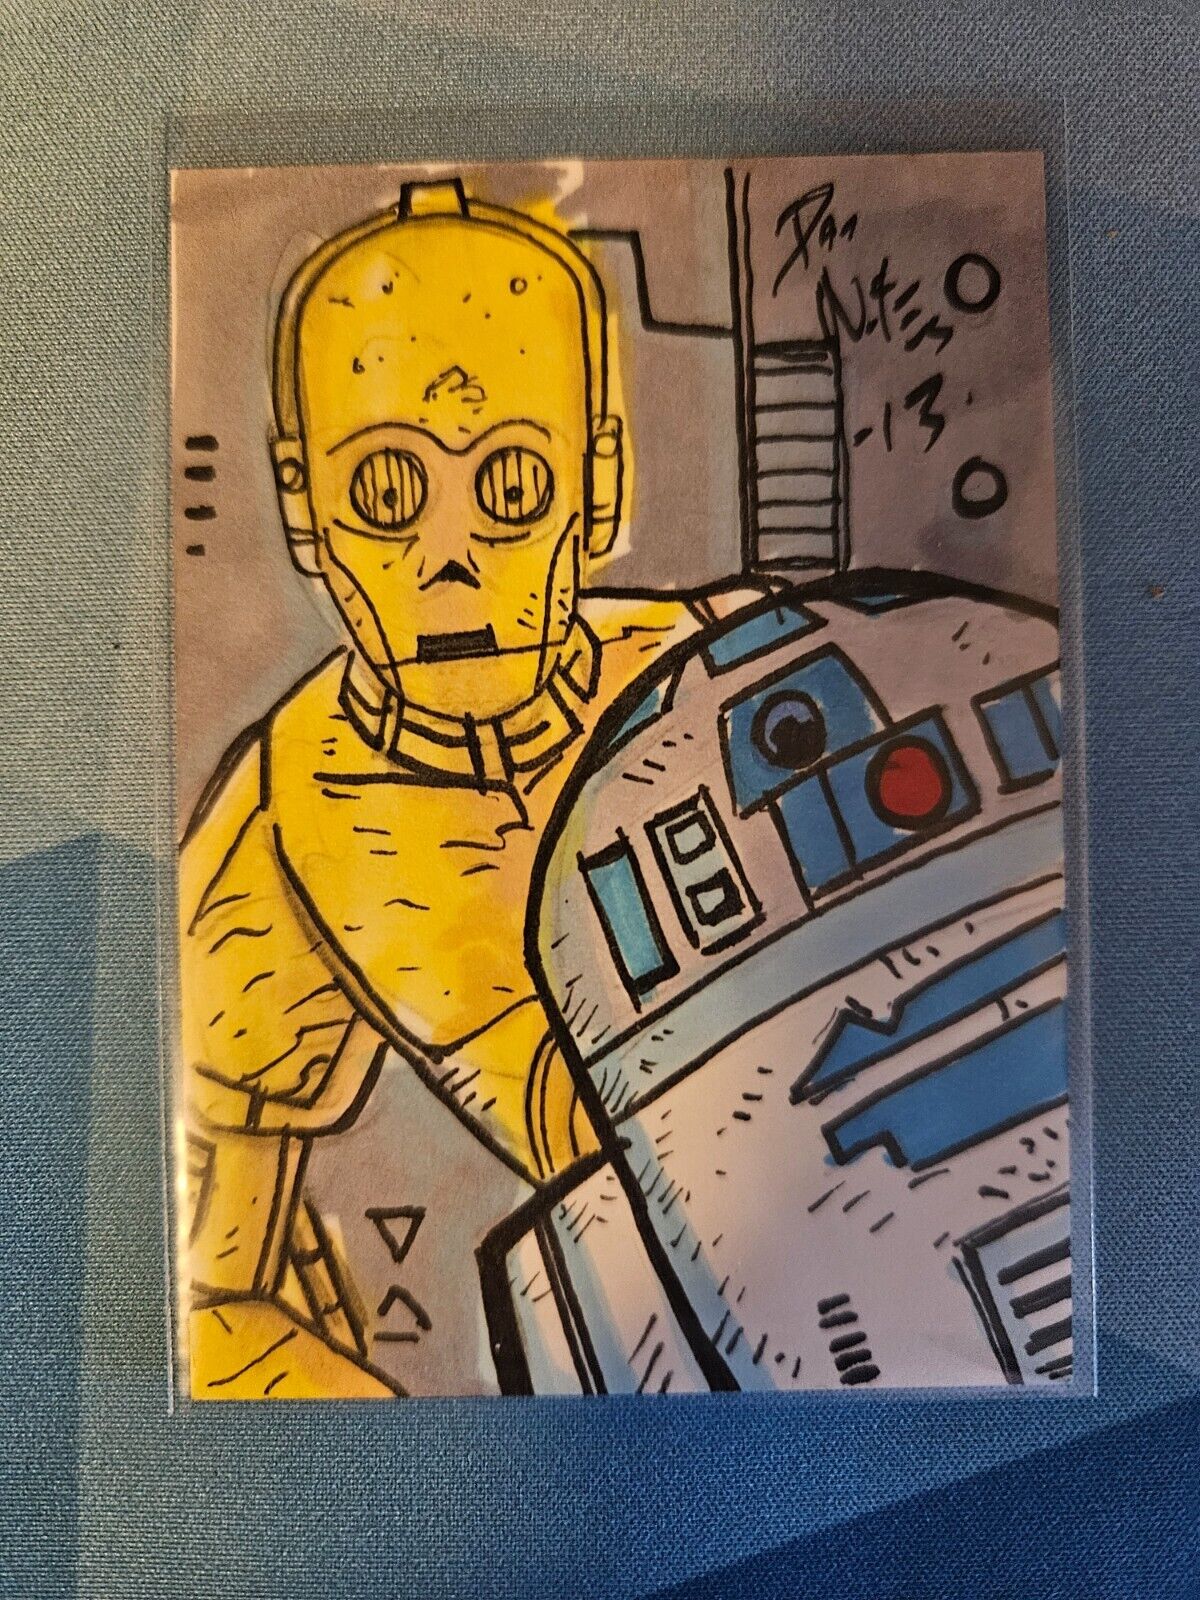 Star Wars Sketch Card 1/1 Dan Nokes Signed Sketch of R2D2, C3P0 Rare